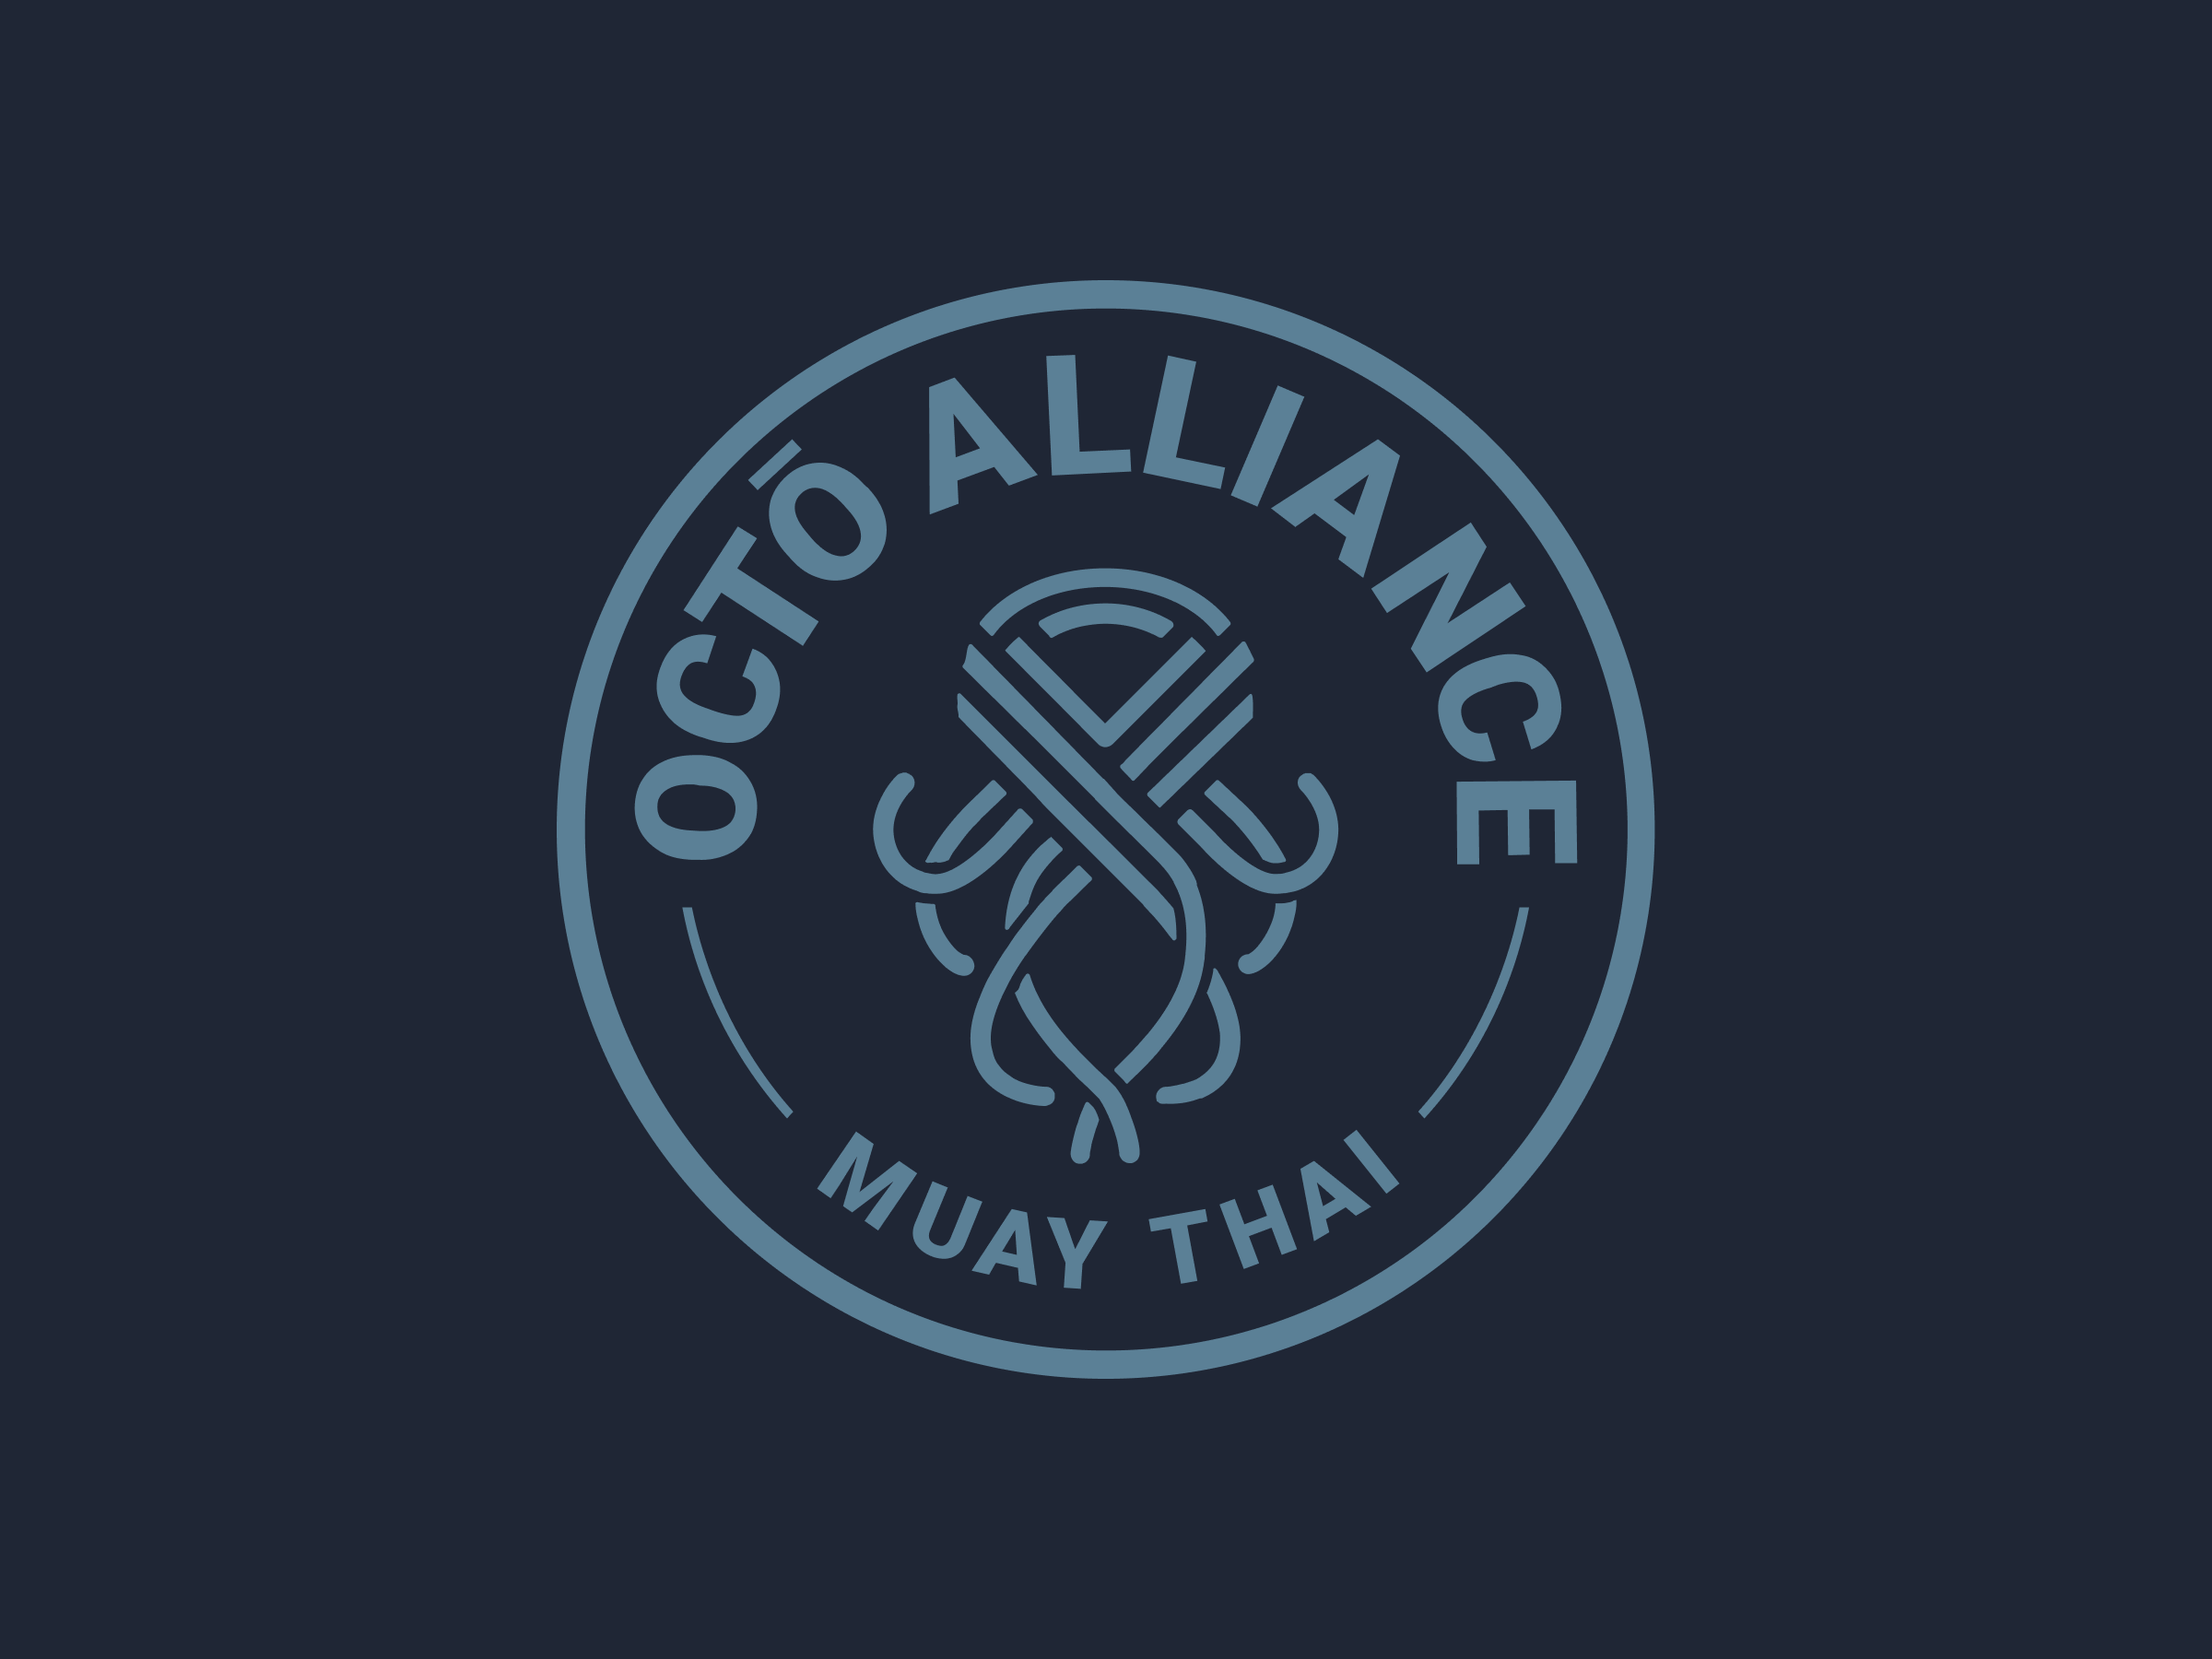 Octō Alliance Muay Thai